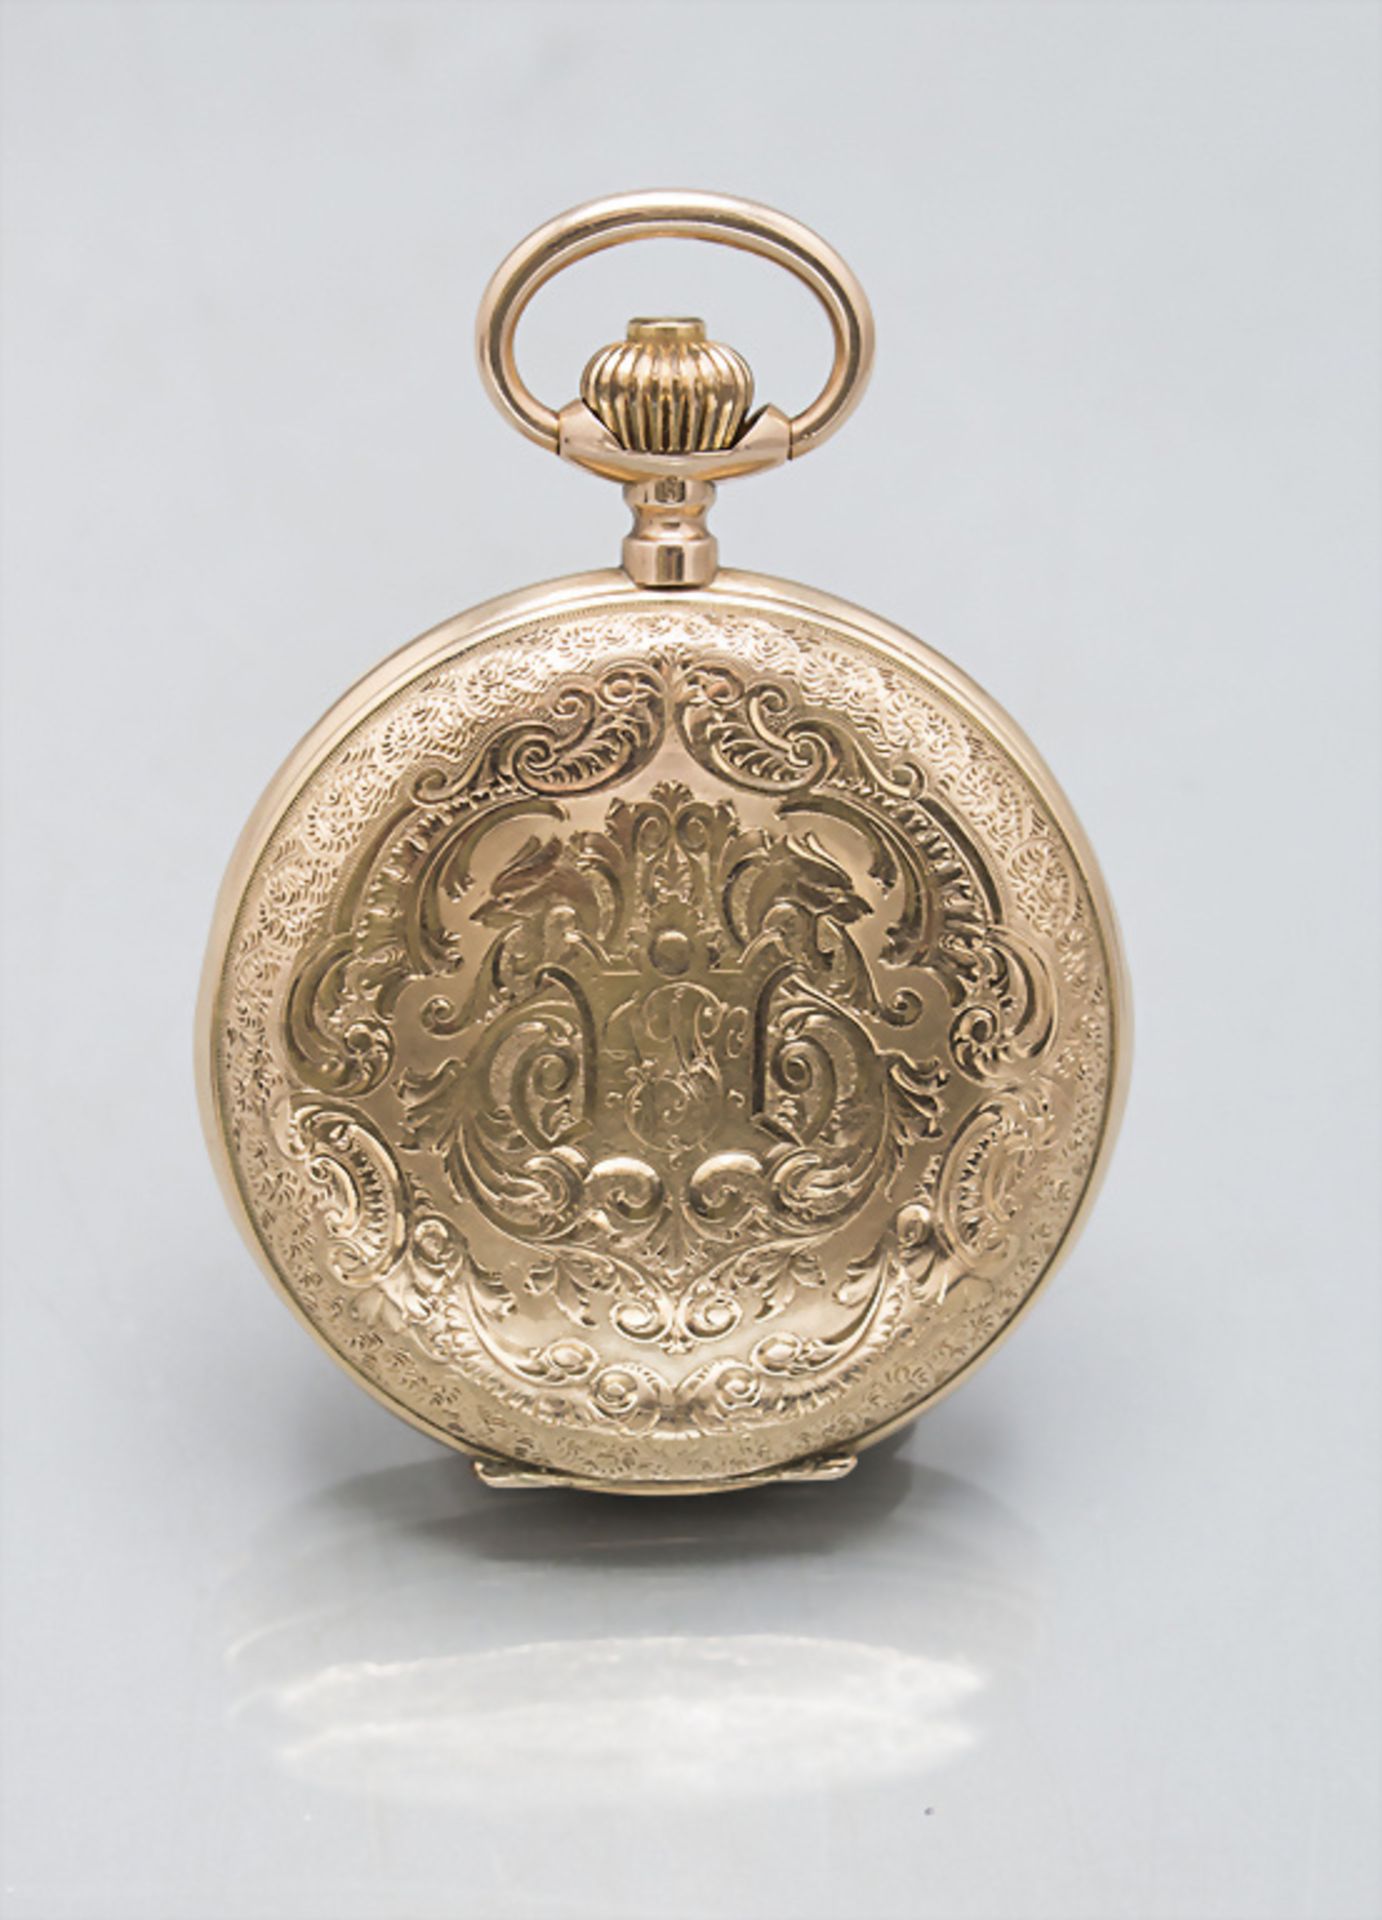 Savonette / Taschenuhr / A 14 ct gold pocket watch, Monopol Dürrstein, Dresden / Swiss, um 1910 - Image 2 of 7